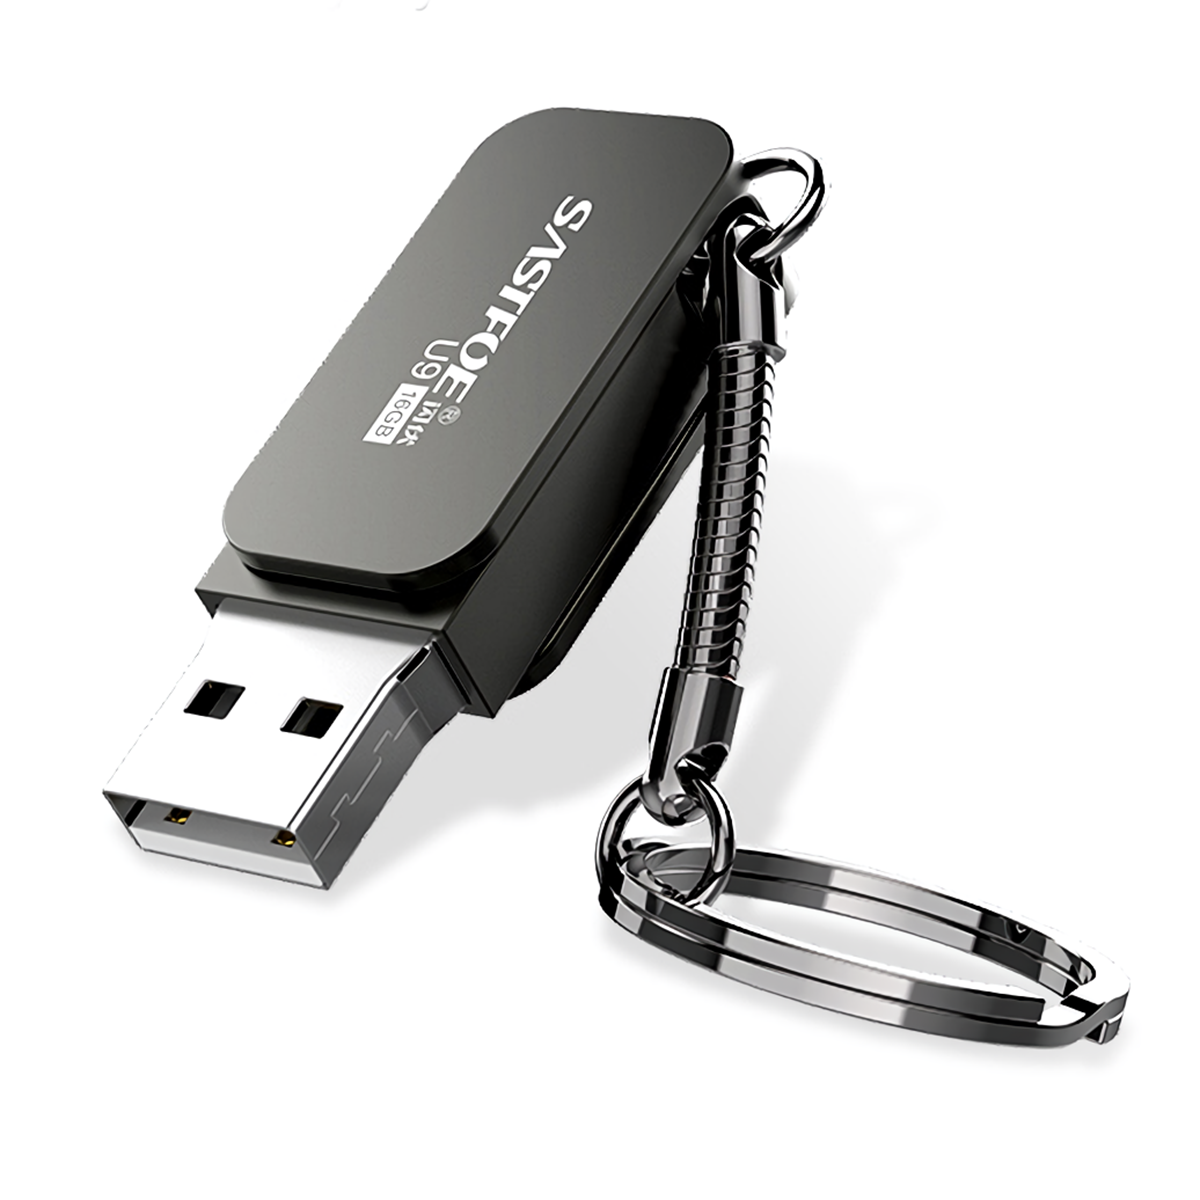 

SASTFOE USB3.0 Flash Drive Pendrive Zinc Alloy Portable USB Disk with Key Chain Thumb Drive U Disk